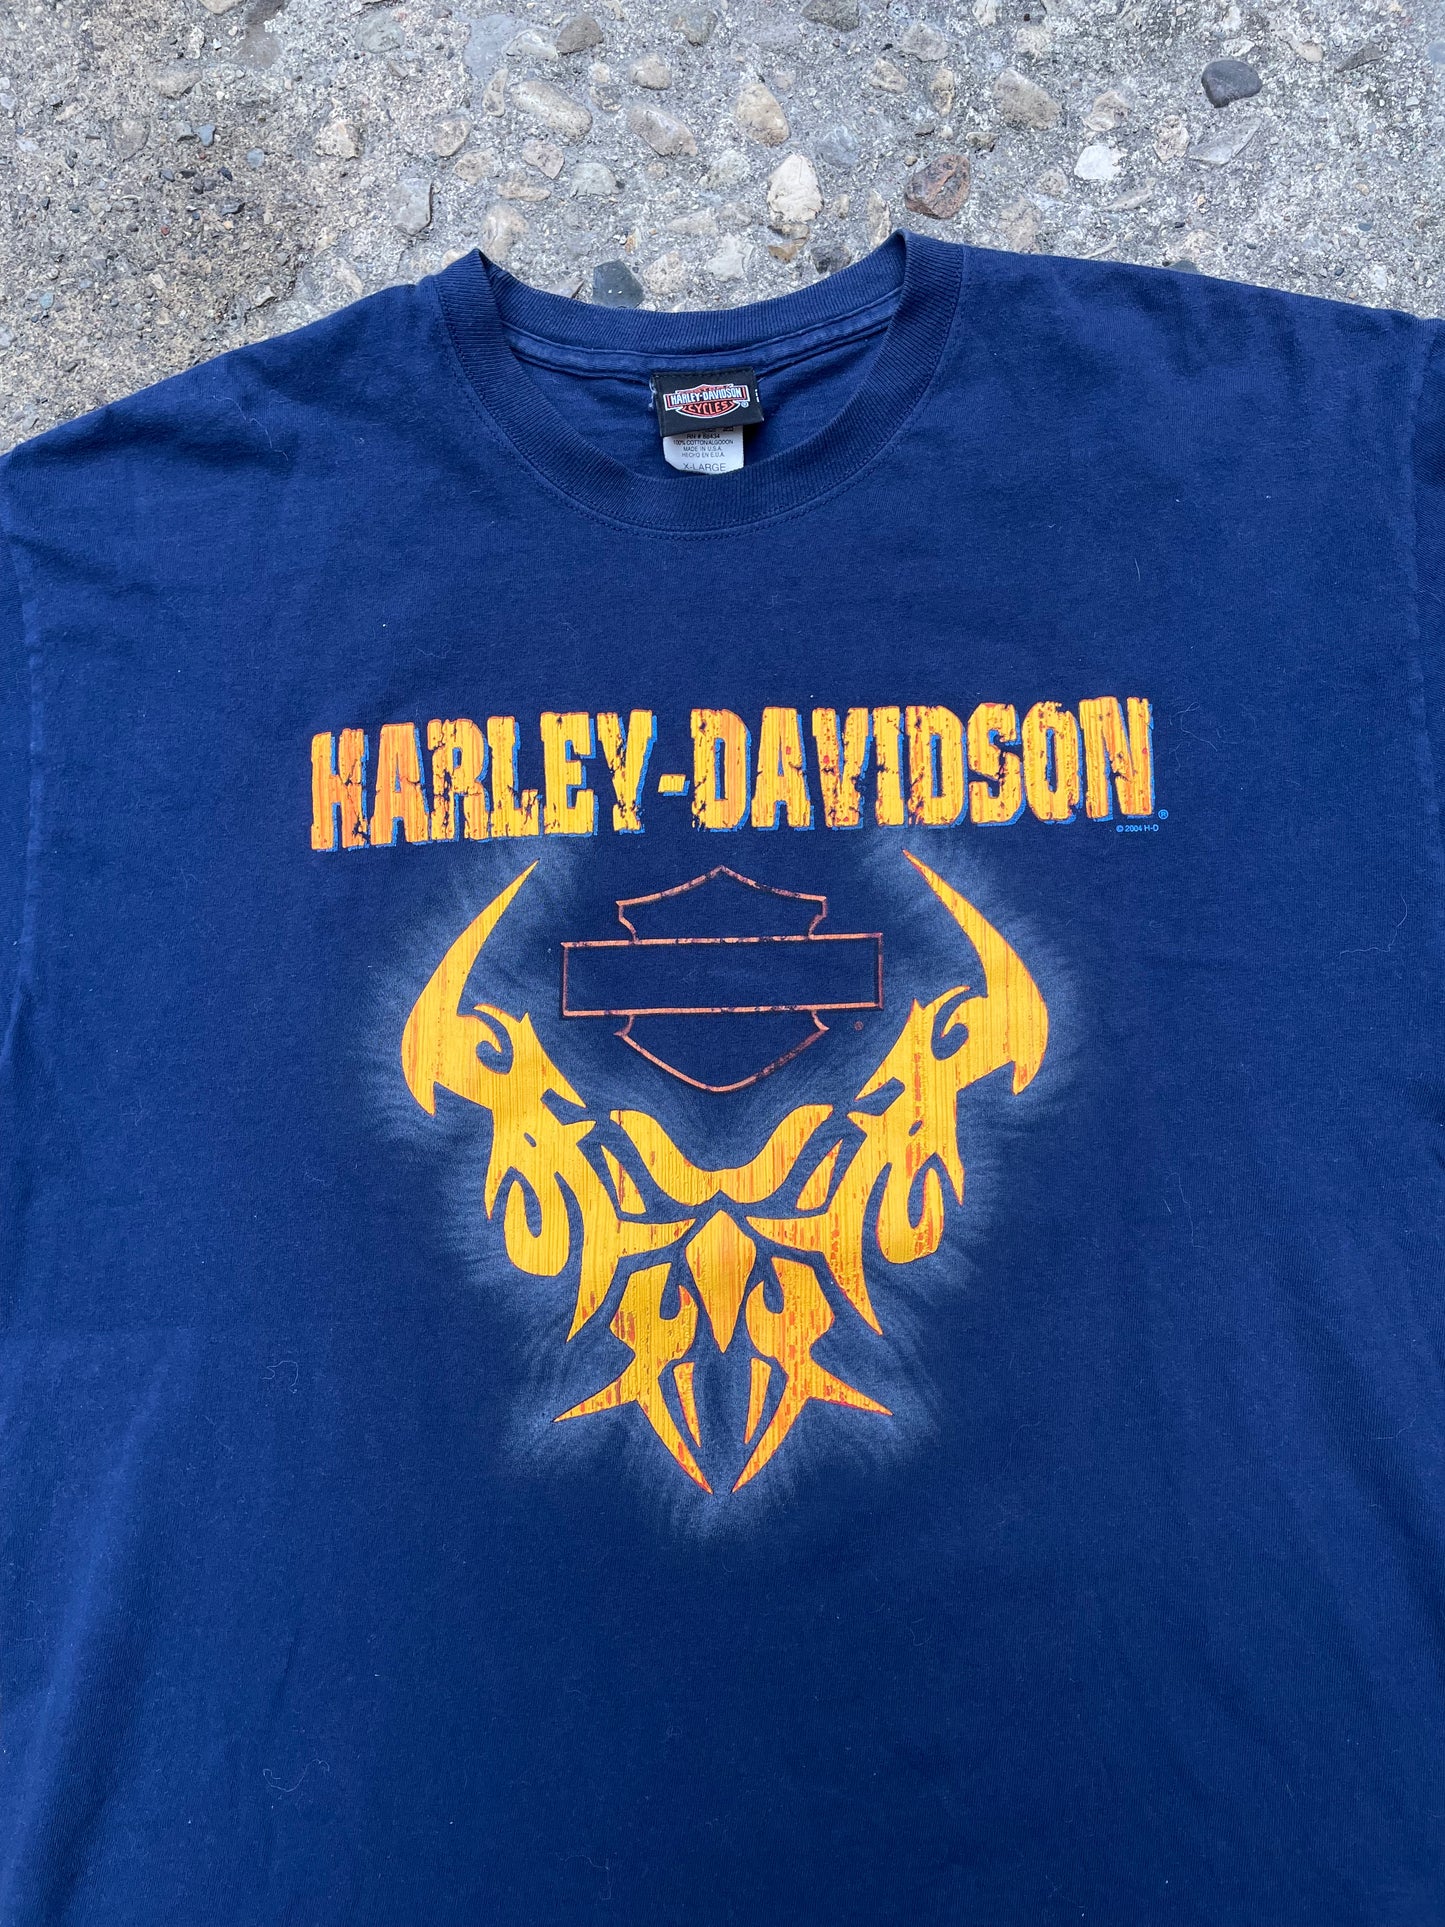 2004 Harley Davidson Motorcycles T-Shirt - XL